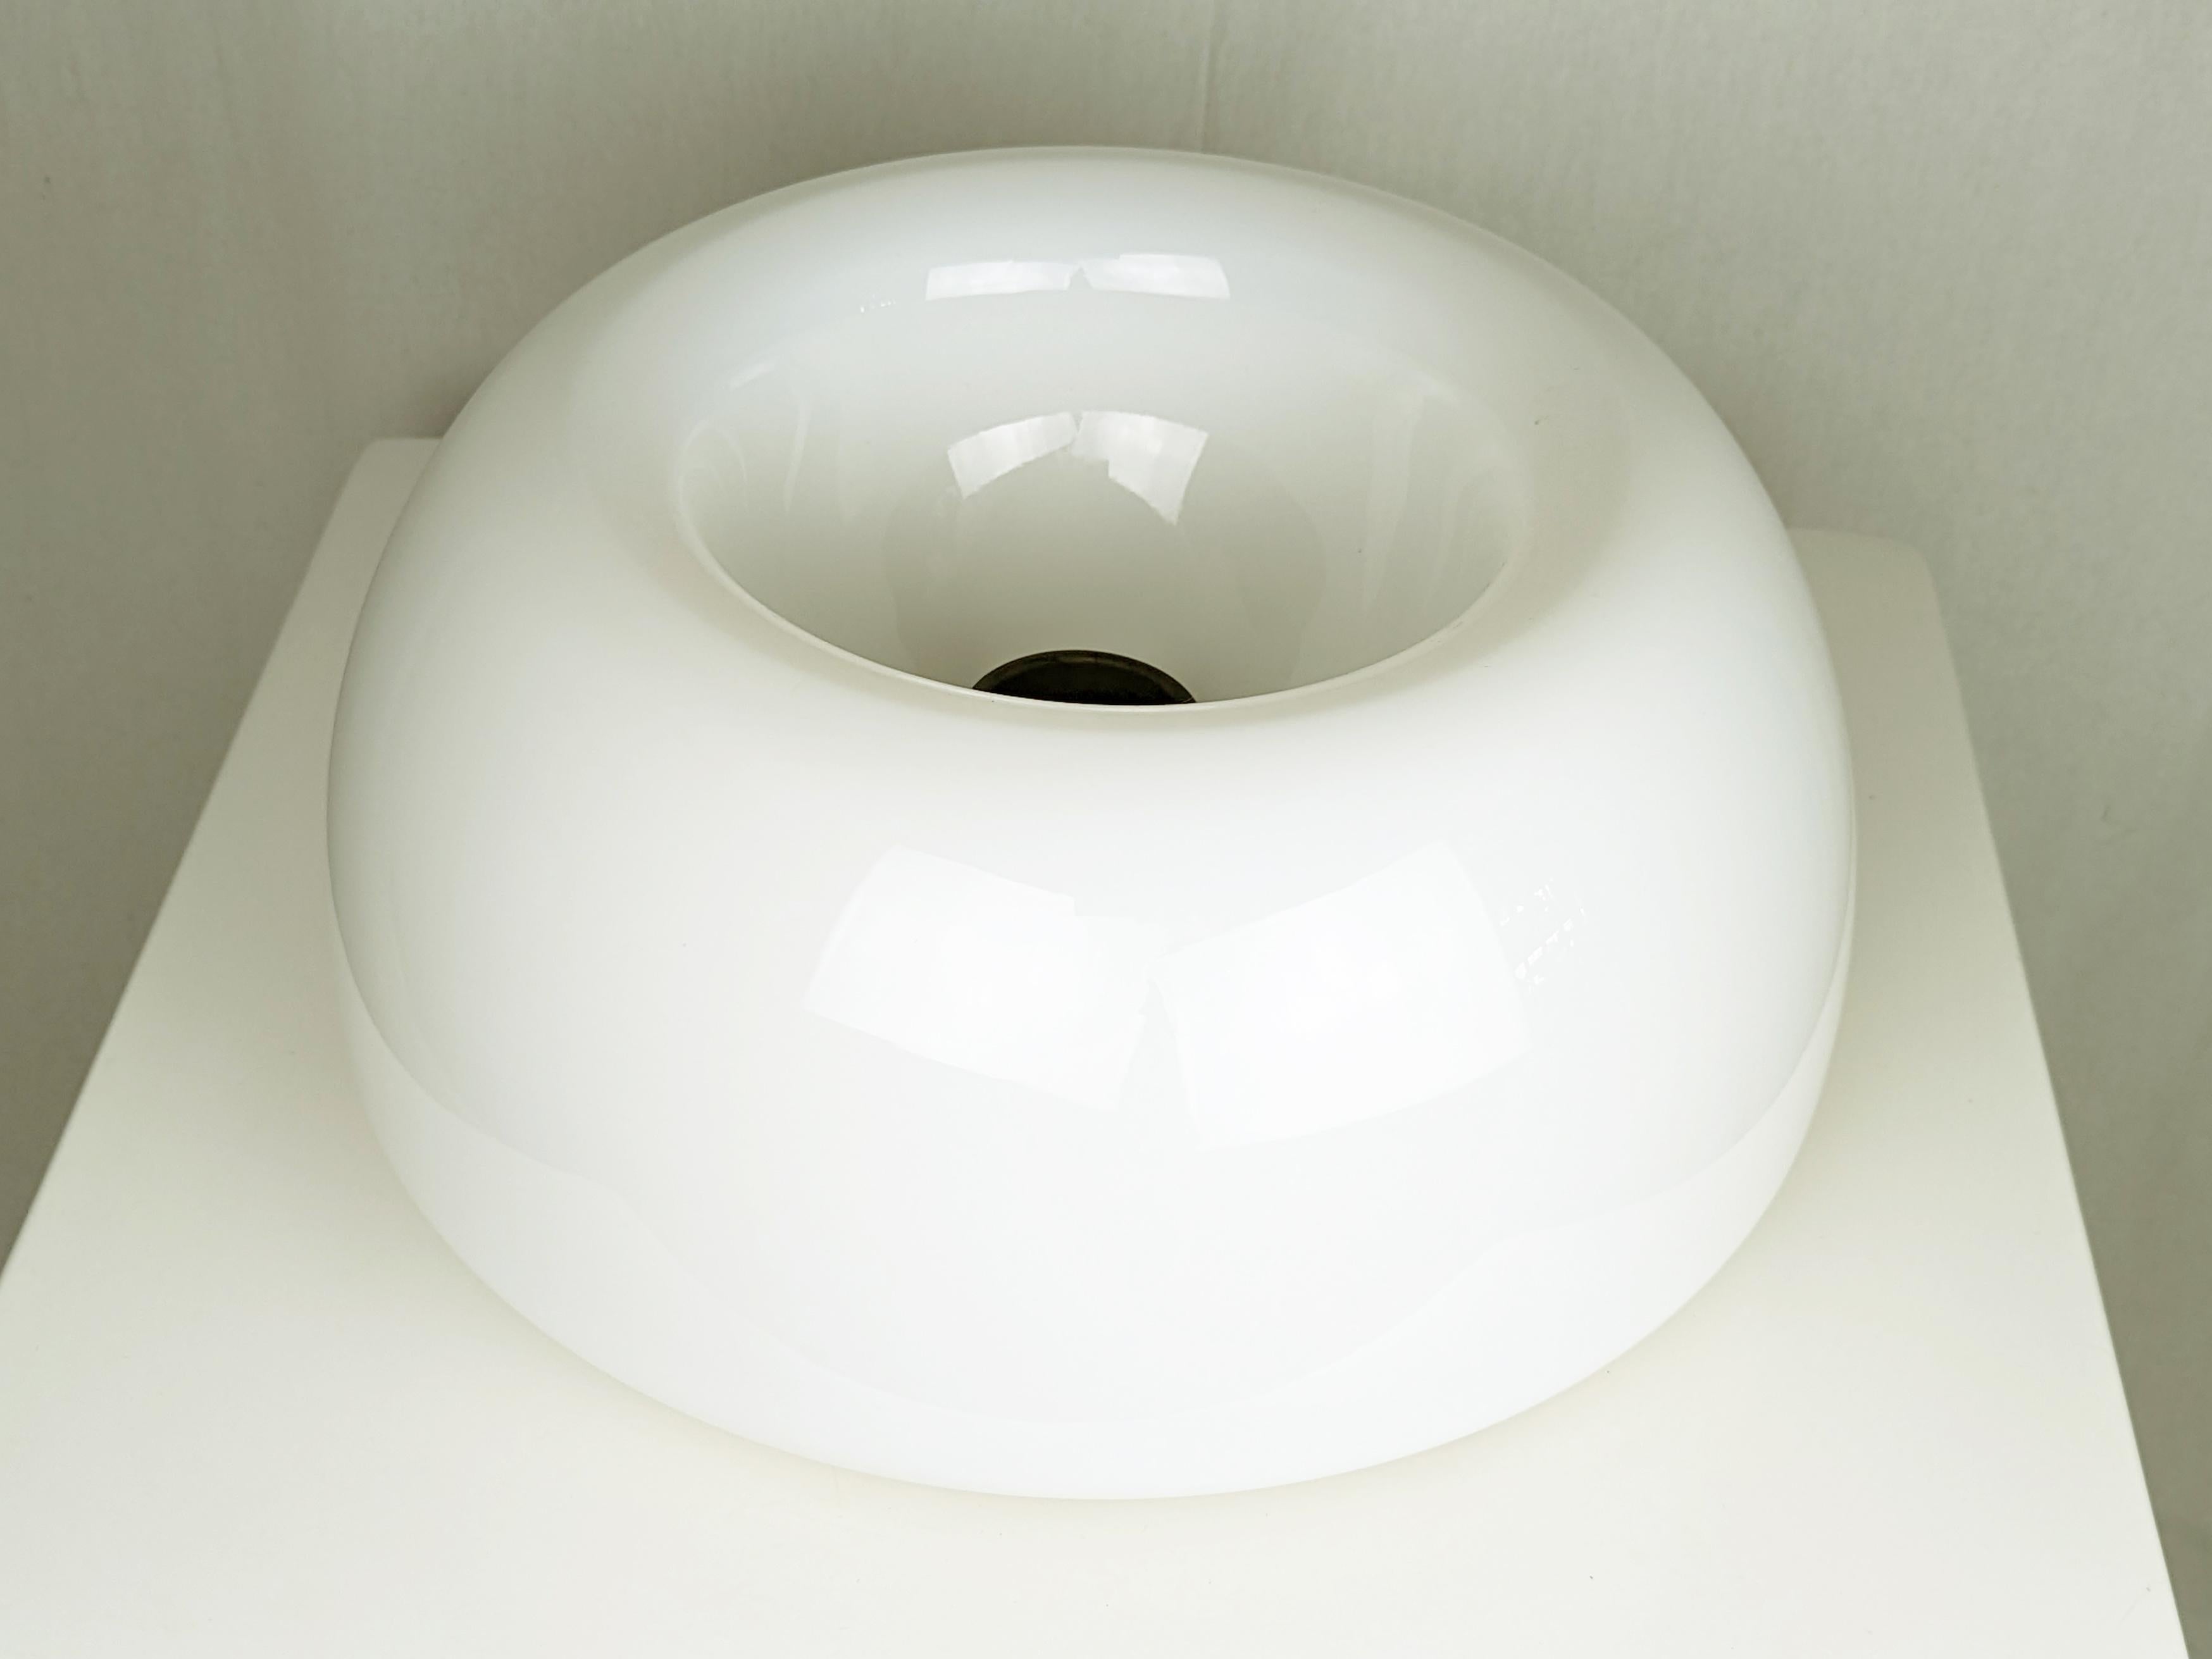 Diese Velella-Lampe kann als Wandleuchte oder als Deckenleuchte verwendet werden. Sie besteht aus einem lackierten Metallrahmen mit verstellbaren Halterungen und einem Schirm aus Opalglas. 
Dieses Modell bietet nur die externe E27-Fassung, nicht